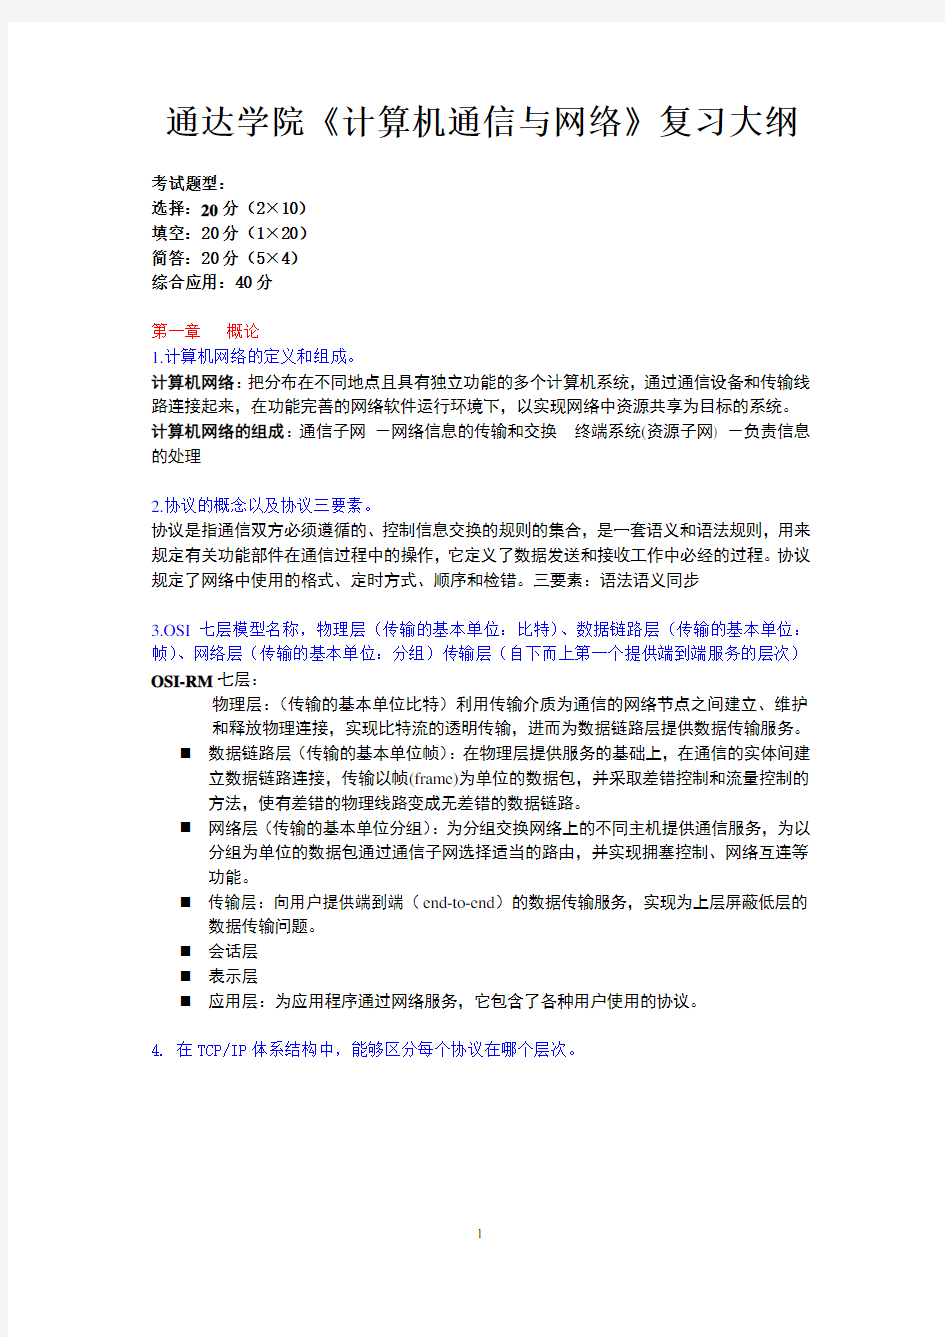 计算机通信与网络复习提纲2013-12-28修改       南邮